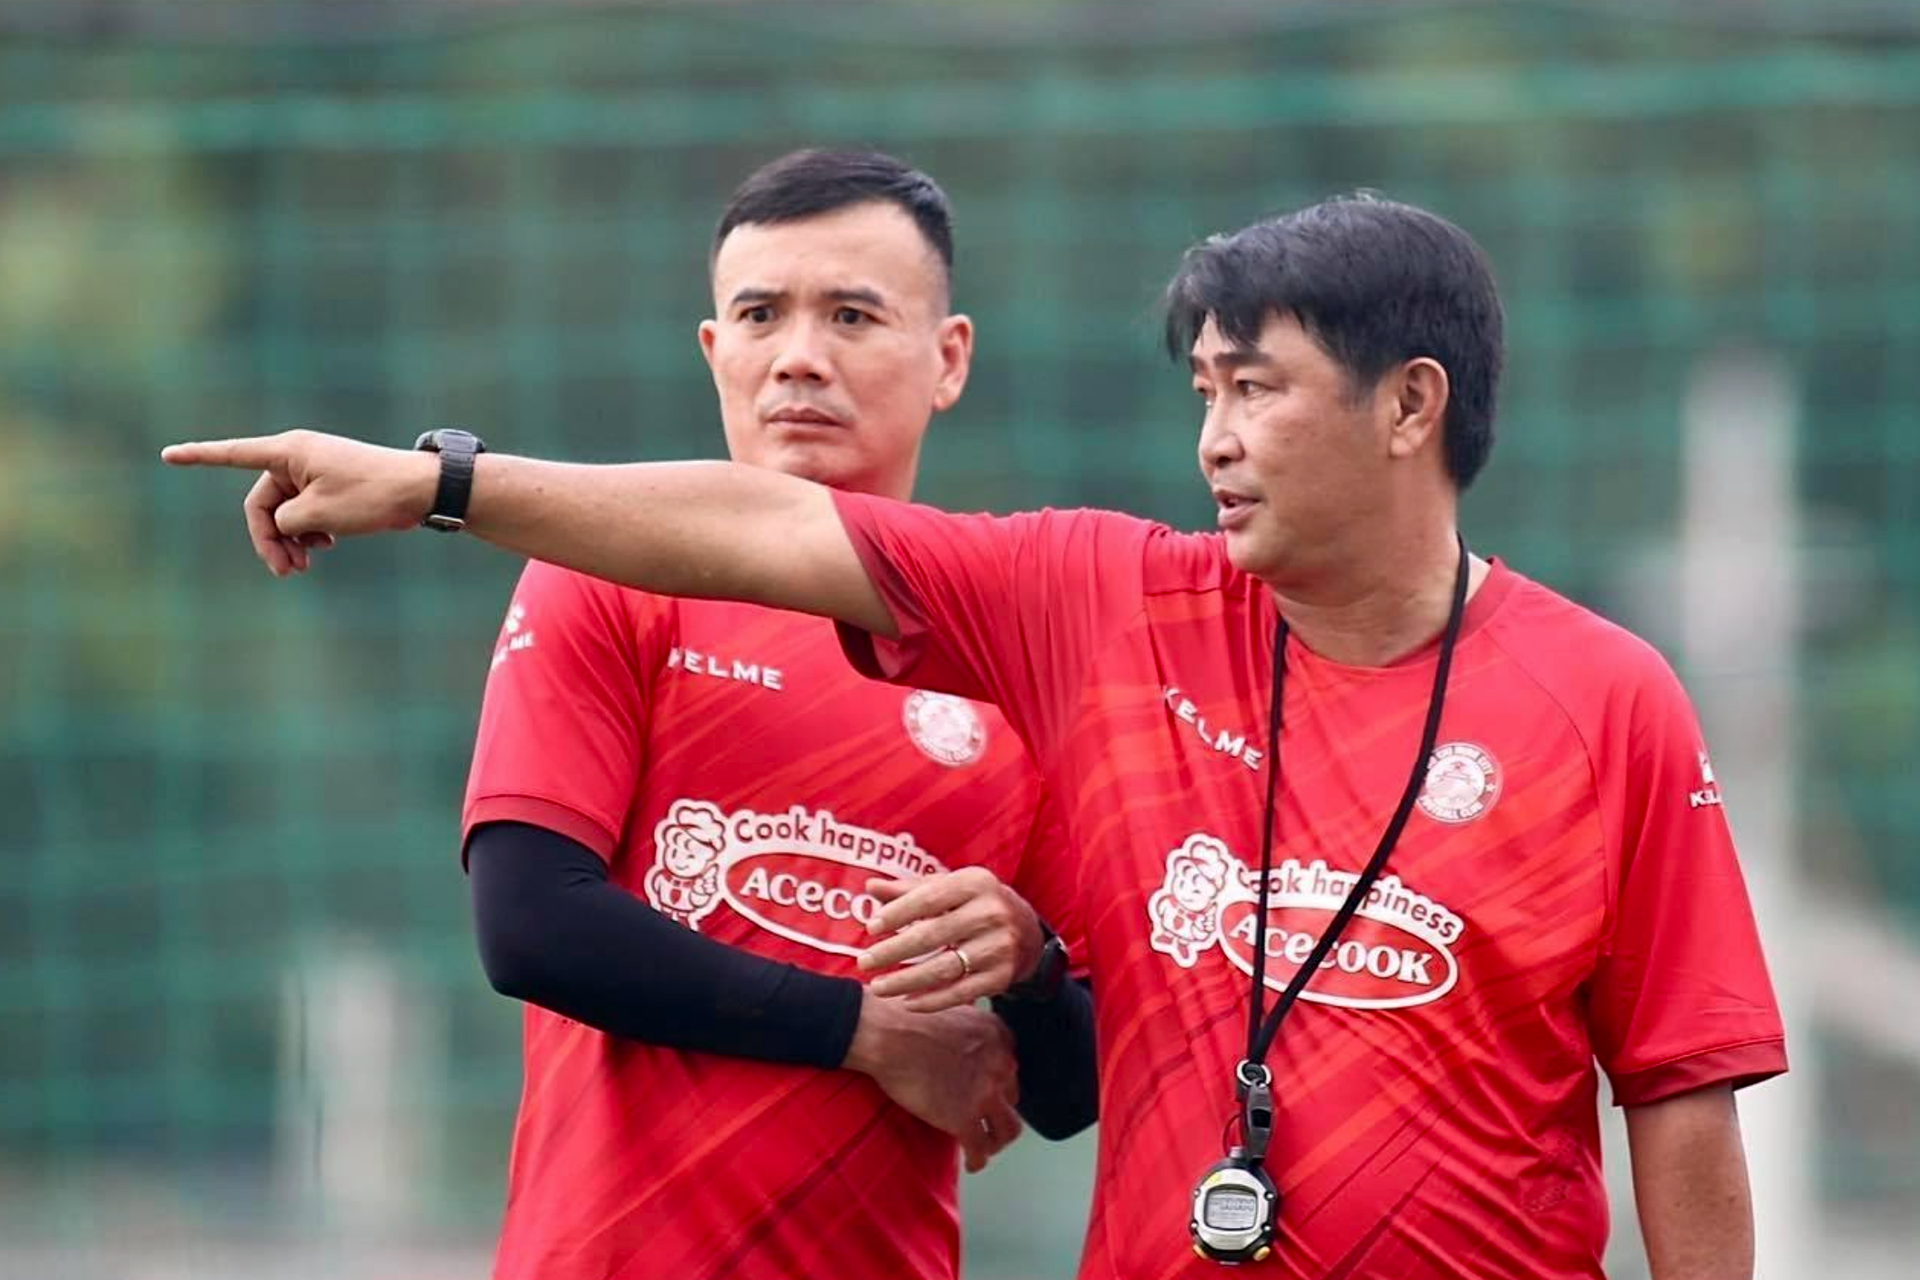 Năm Dần 2022 bàn về đội hình tuổi Hổ của bóng đá Việt Nam - 7